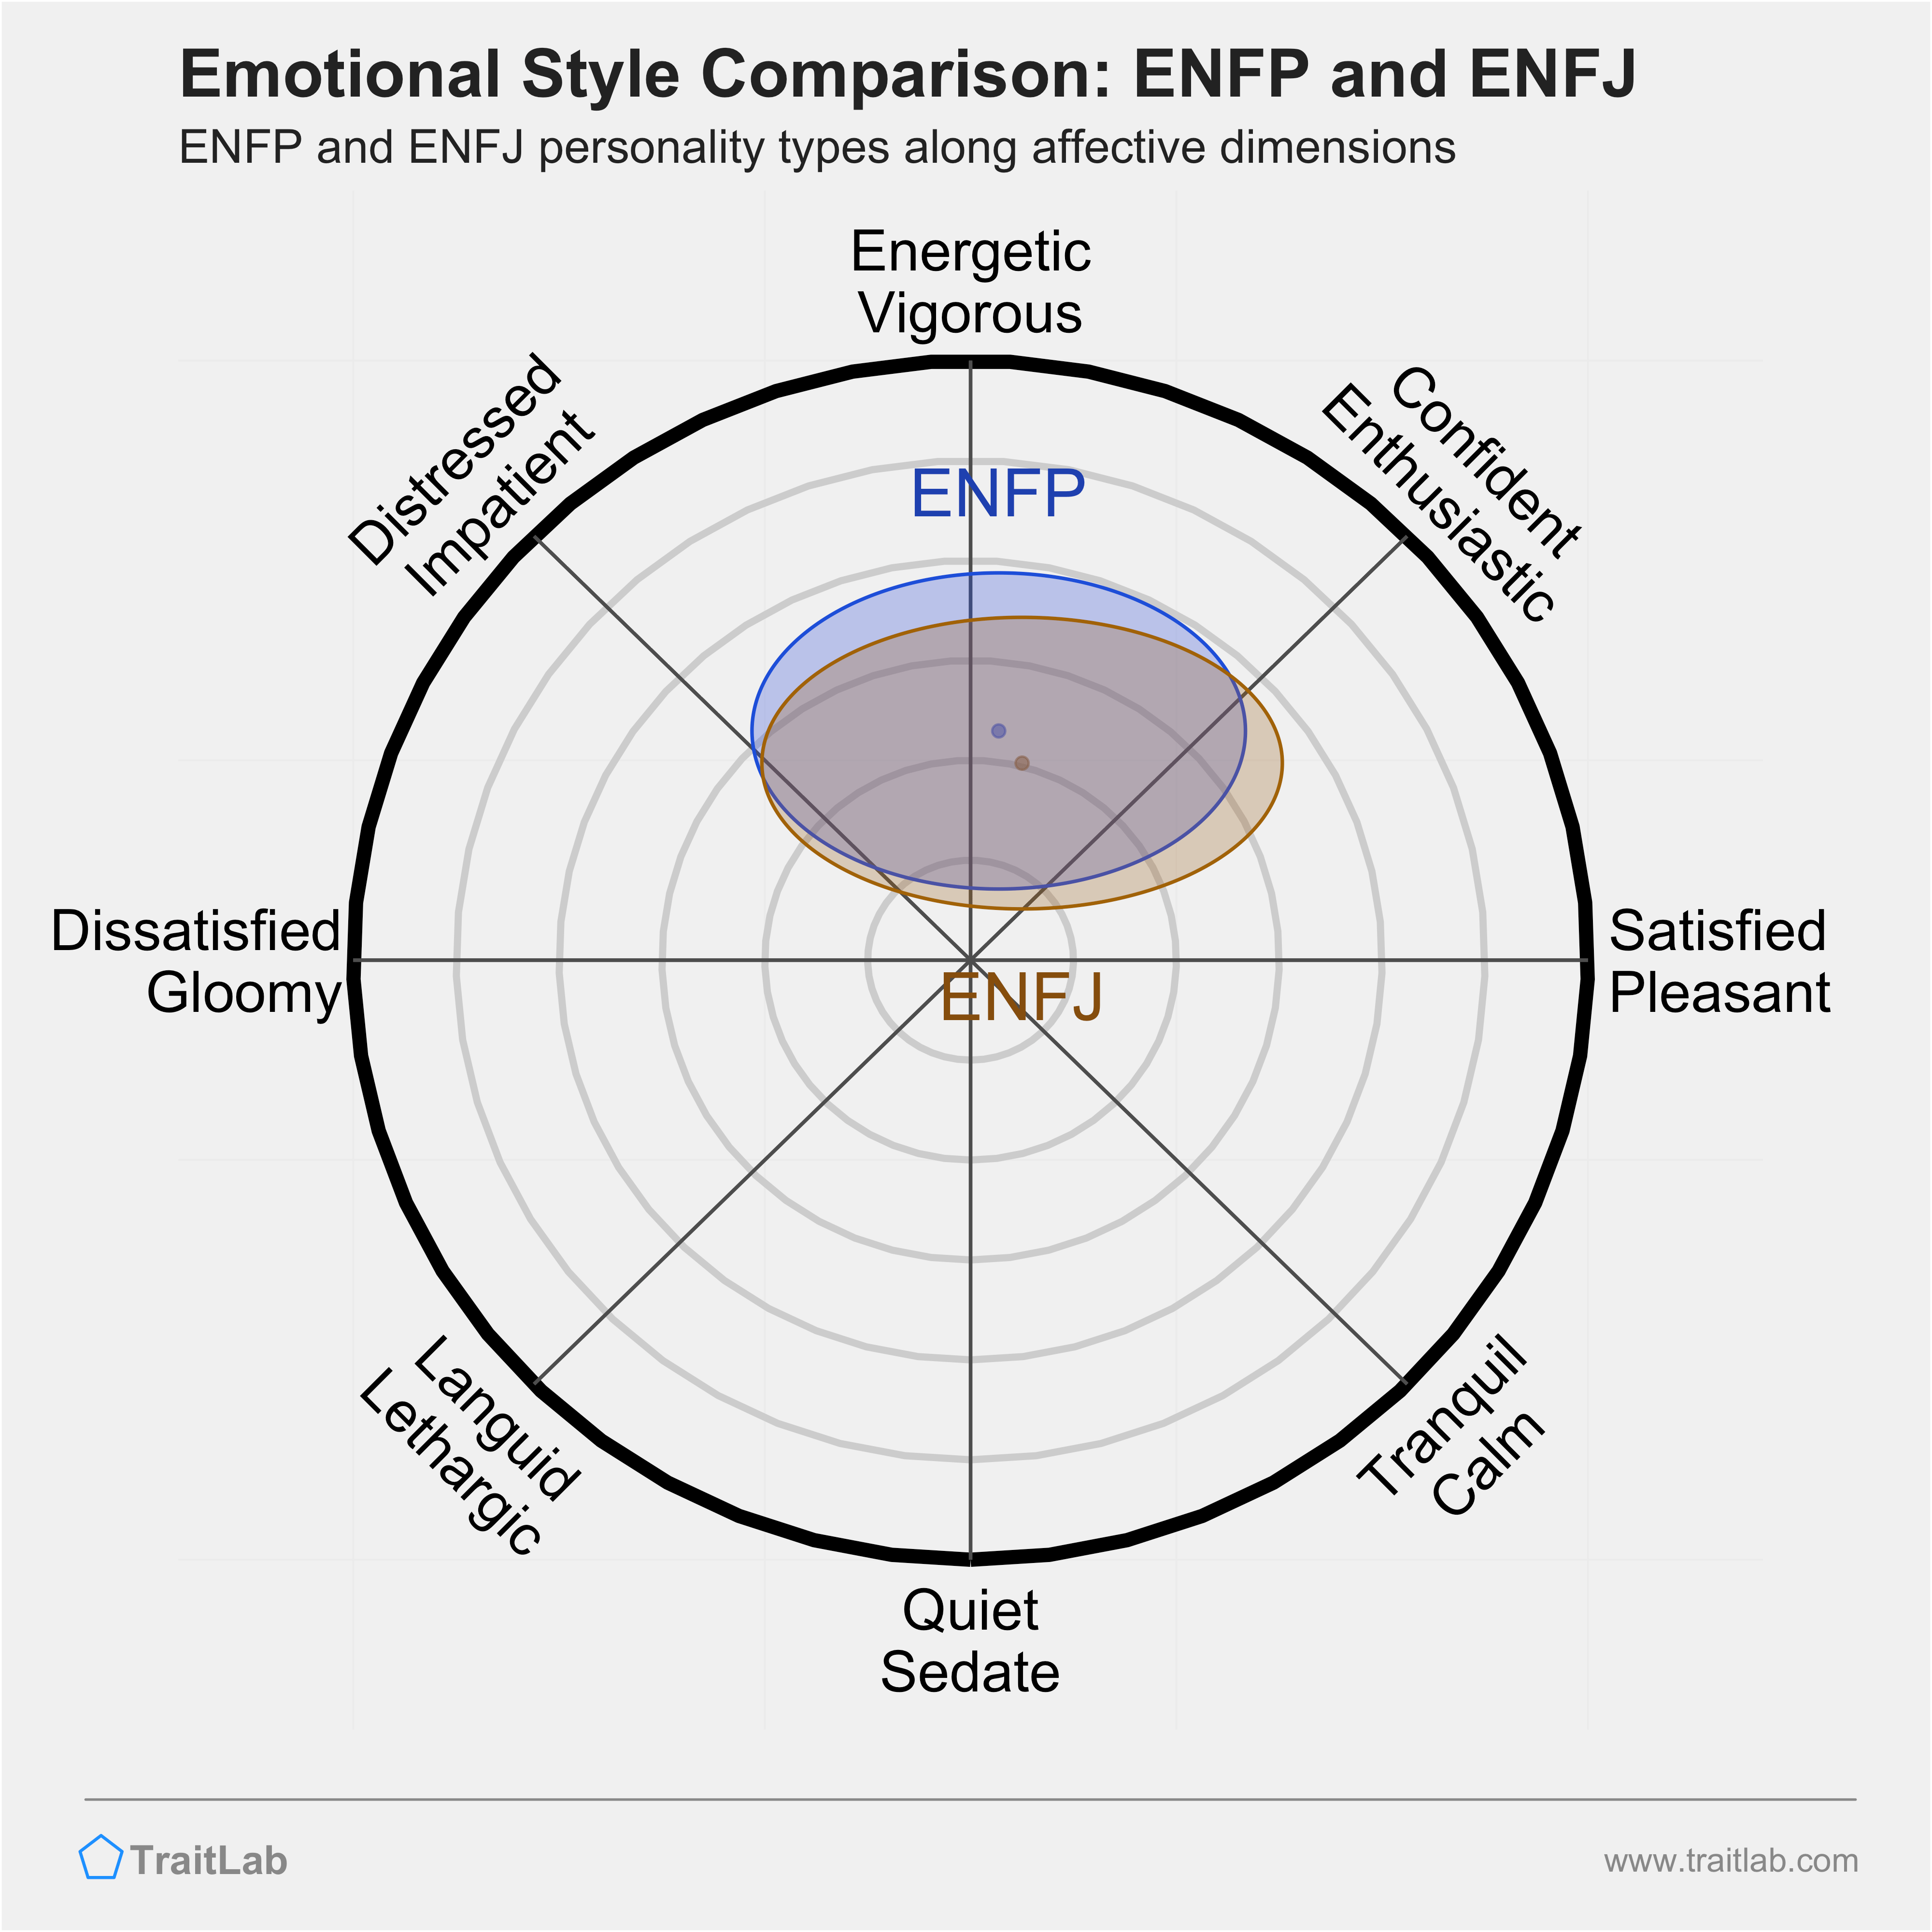 ENFP and ENFJ comparison across emotional (affective) dimensions